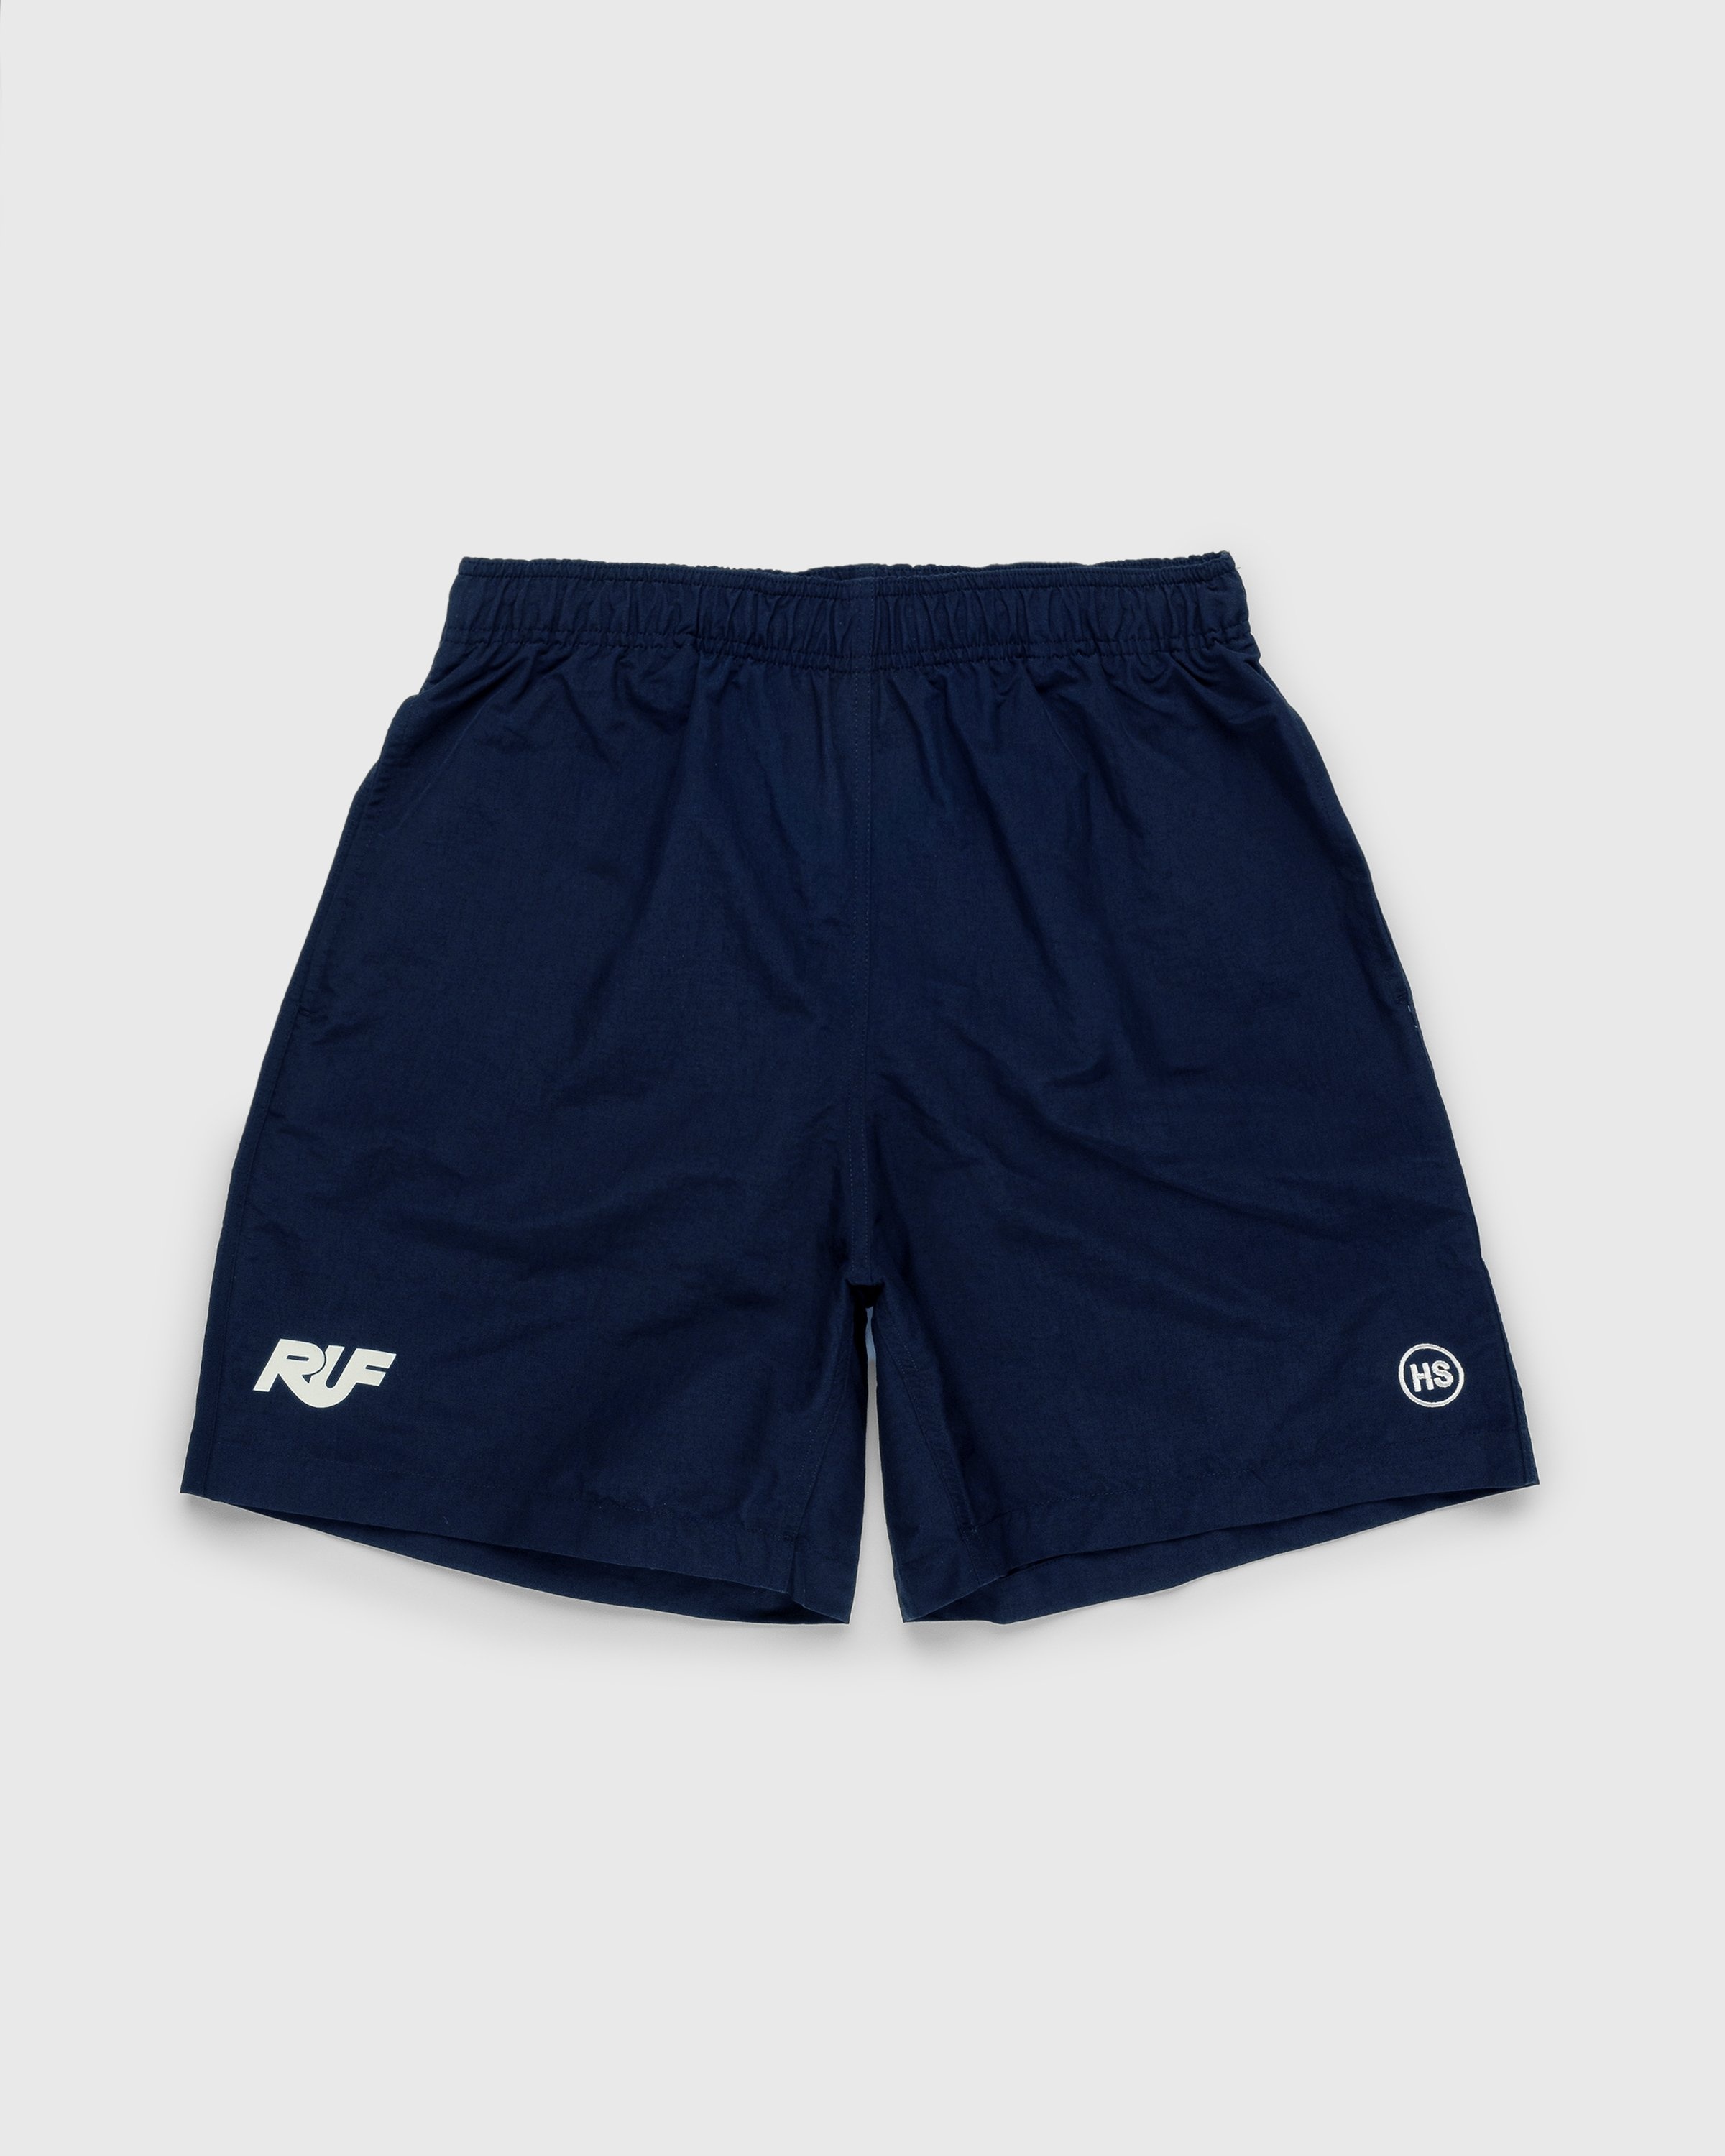 RUF x Highsnobiety – Water Shorts Navy - Shorts - Blue - Image 1